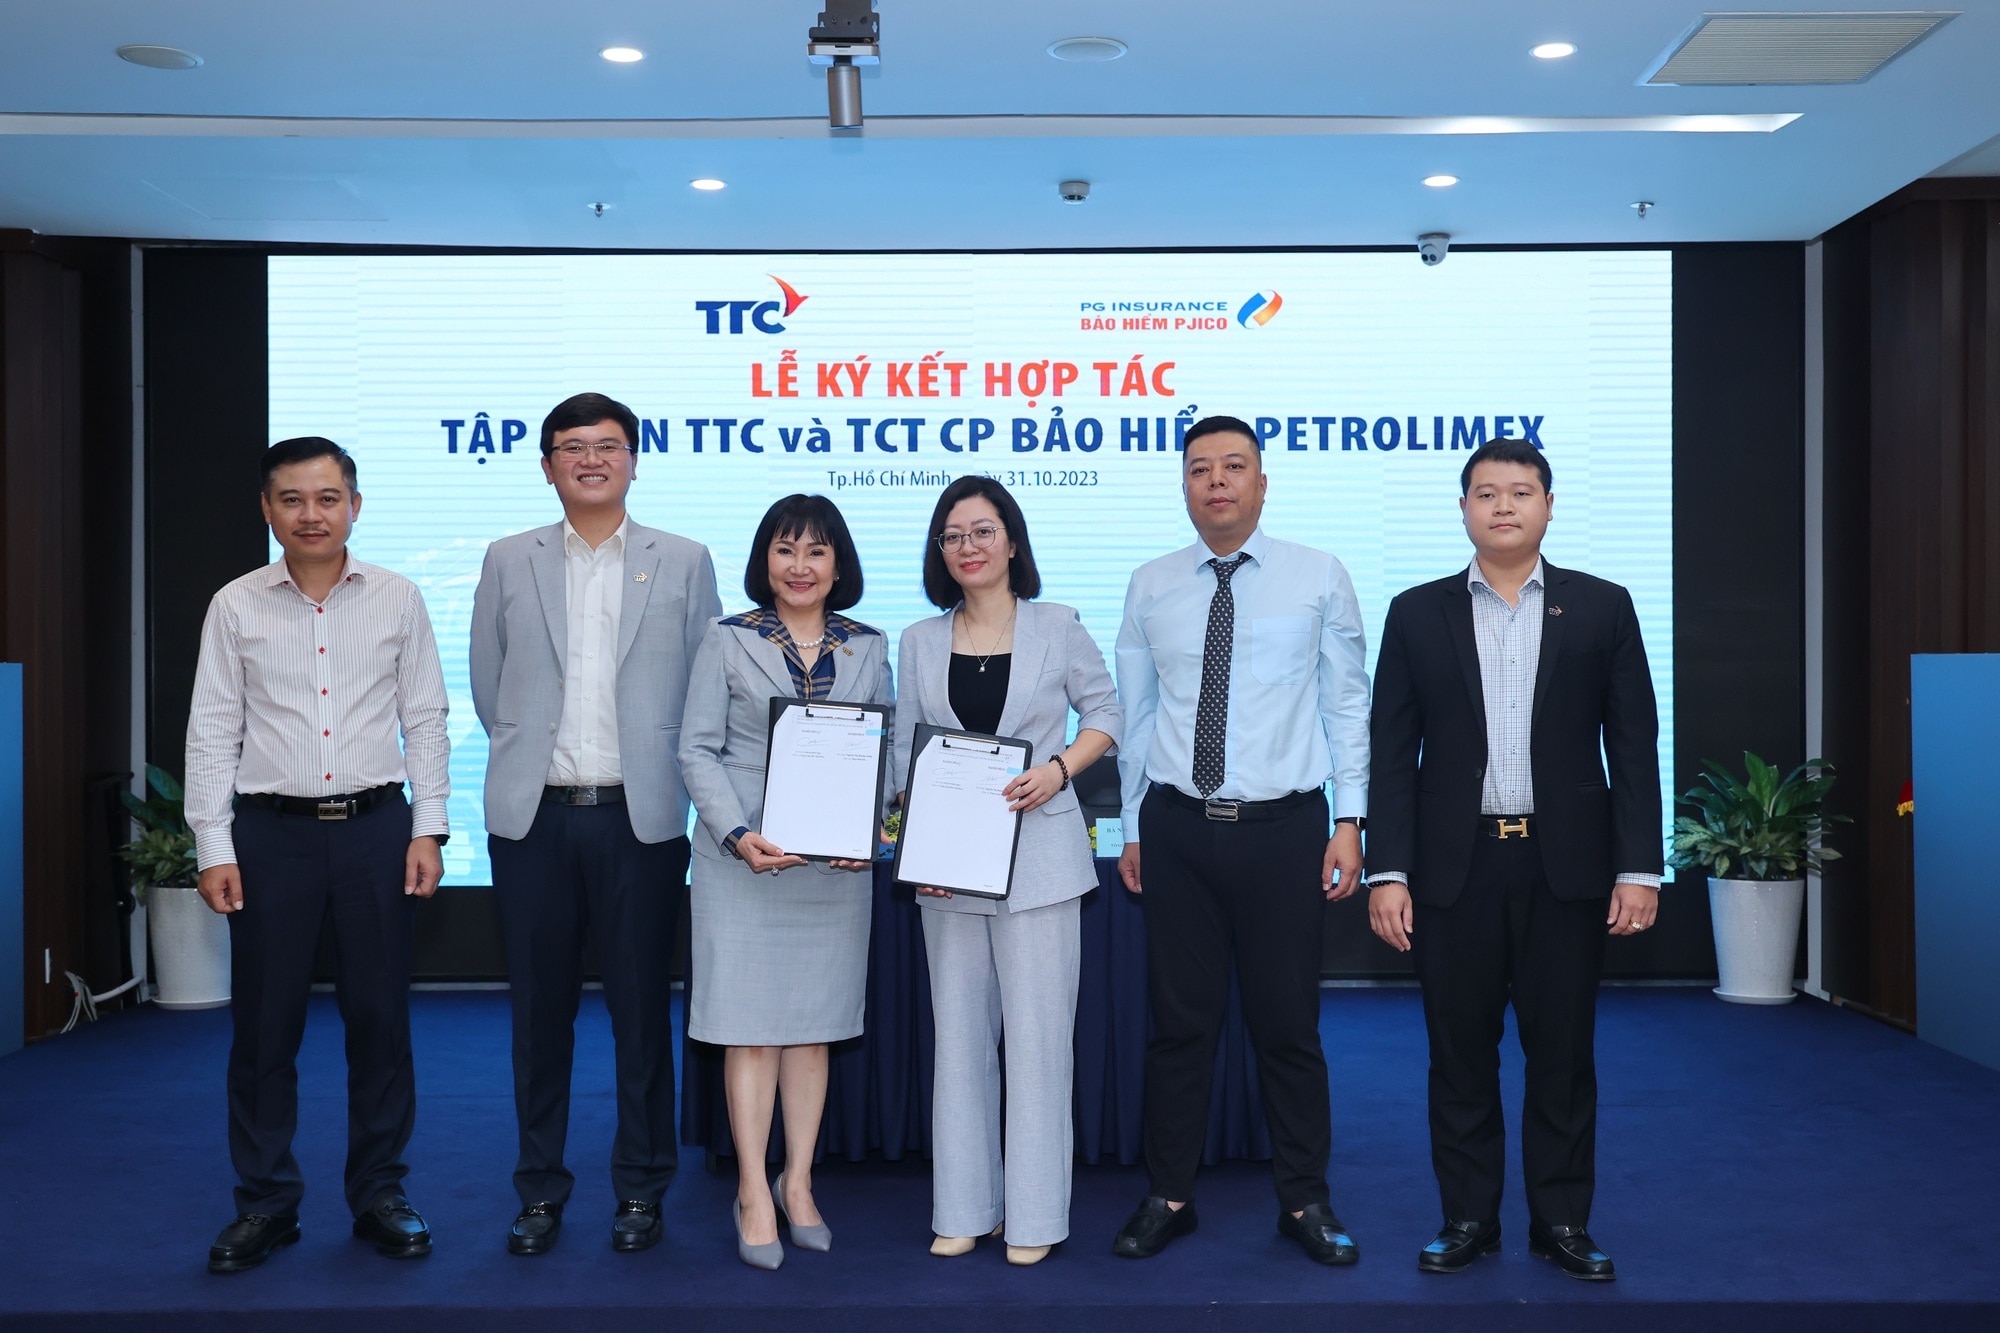 Lễ ký kết hợp tác giữa Tập đoàn TTC và TCT CP Bảo hiểm Petrolimex - Ảnh 1.